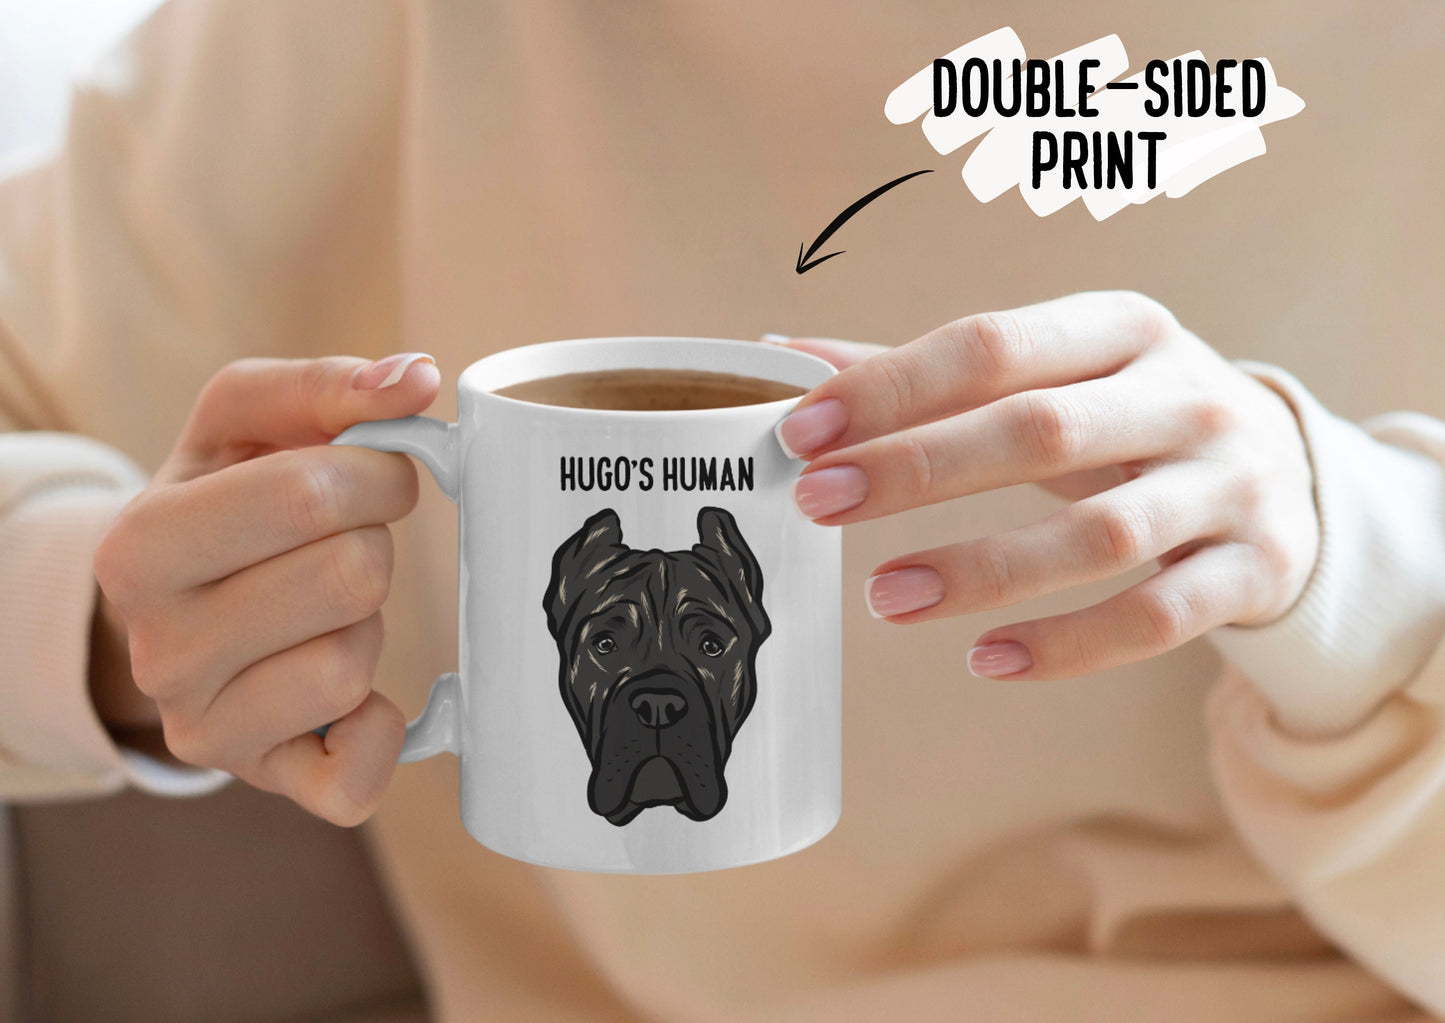 Cane Corso Mug/ Personalised Cane Corso Face Coffee Mug/ Customised Pet Portrait Ceramic Mug/ Cane Corso Owner Christmas Mug Gift/ Dog Mug